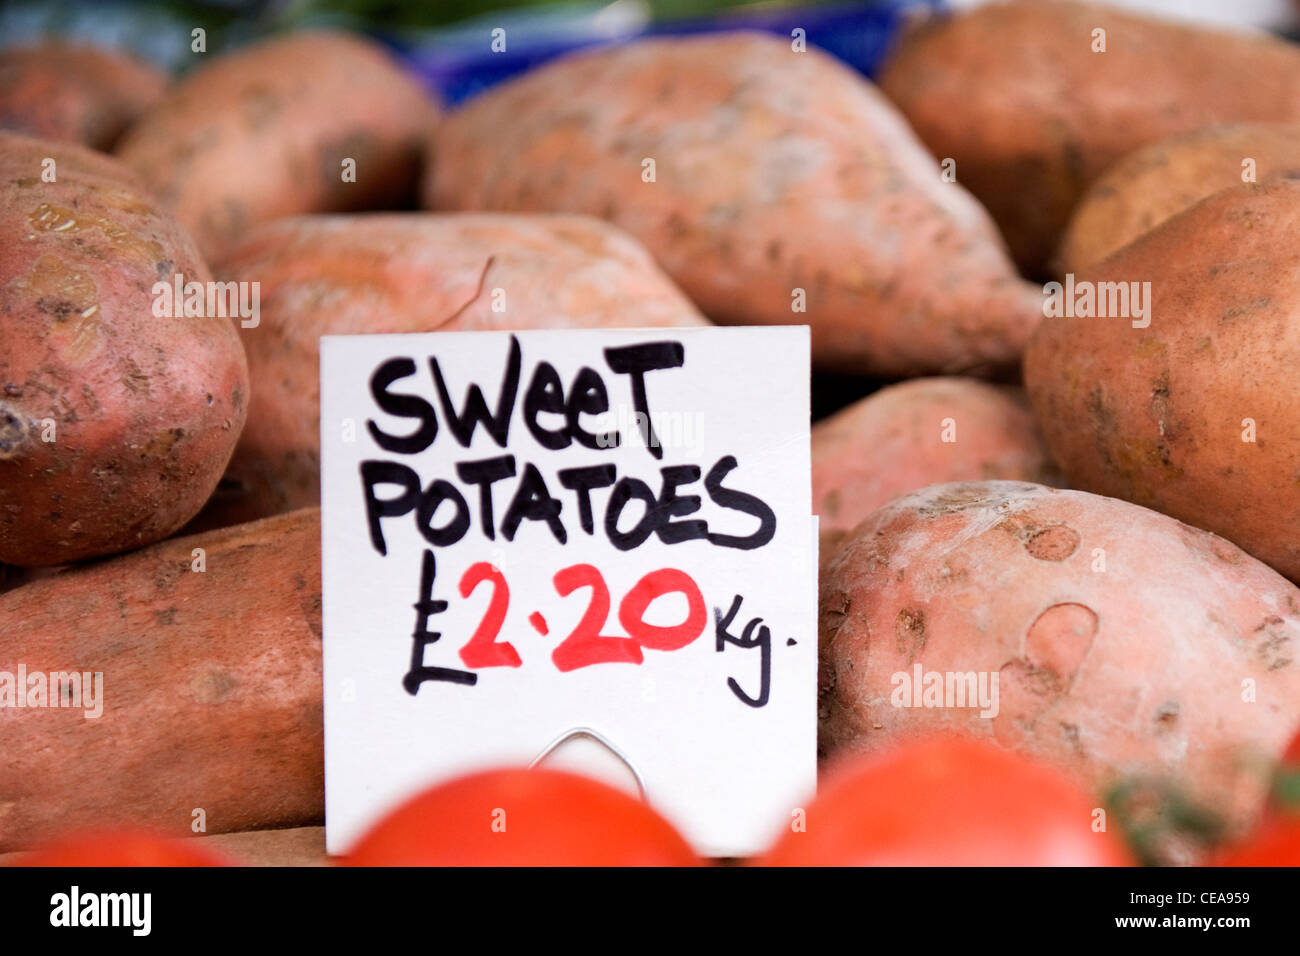 El mercado Borough Market de Londres calado vegetal tienda verdulero Batatas con etiqueta de precio de £2.20 por kg de tomate montón Foto de stock